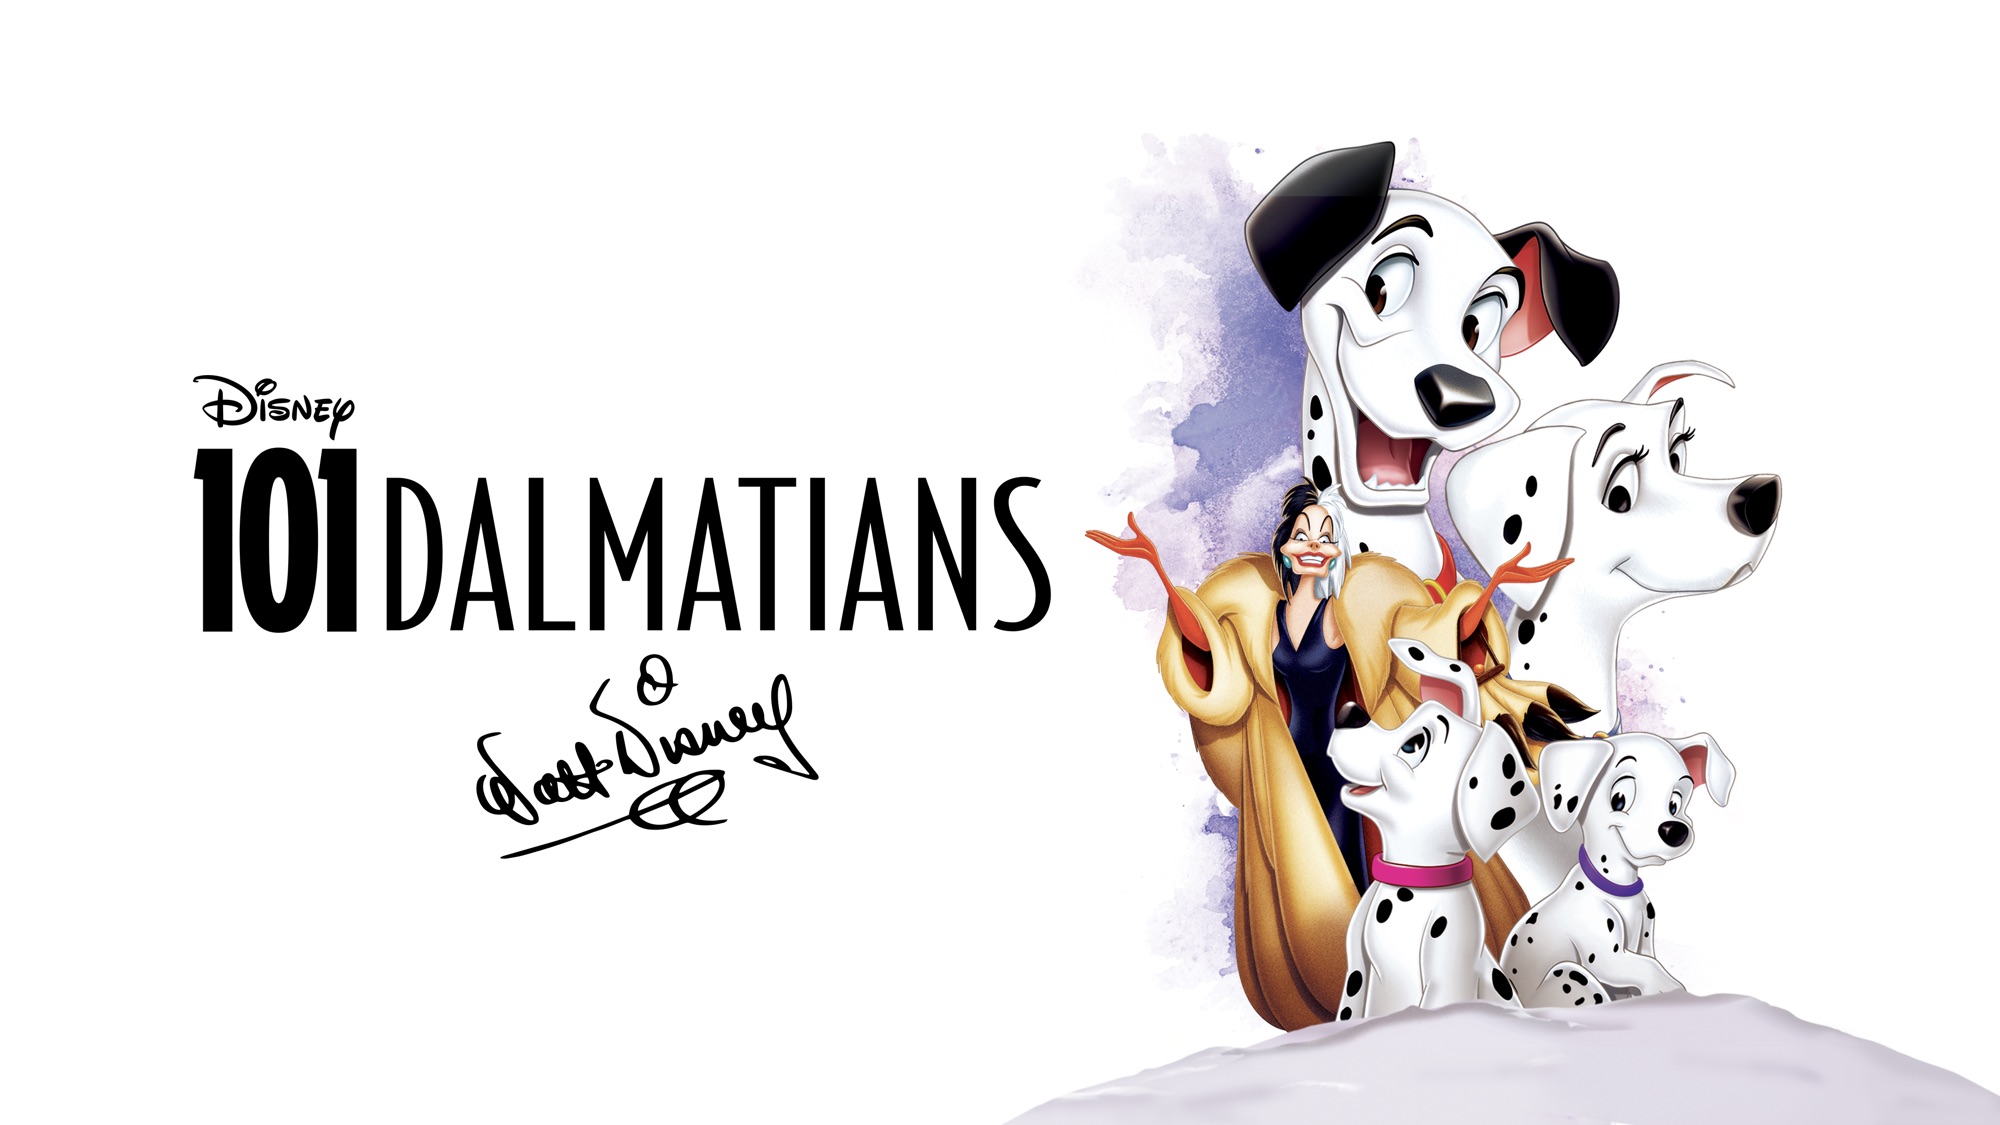 Dalmatians Wallpapers